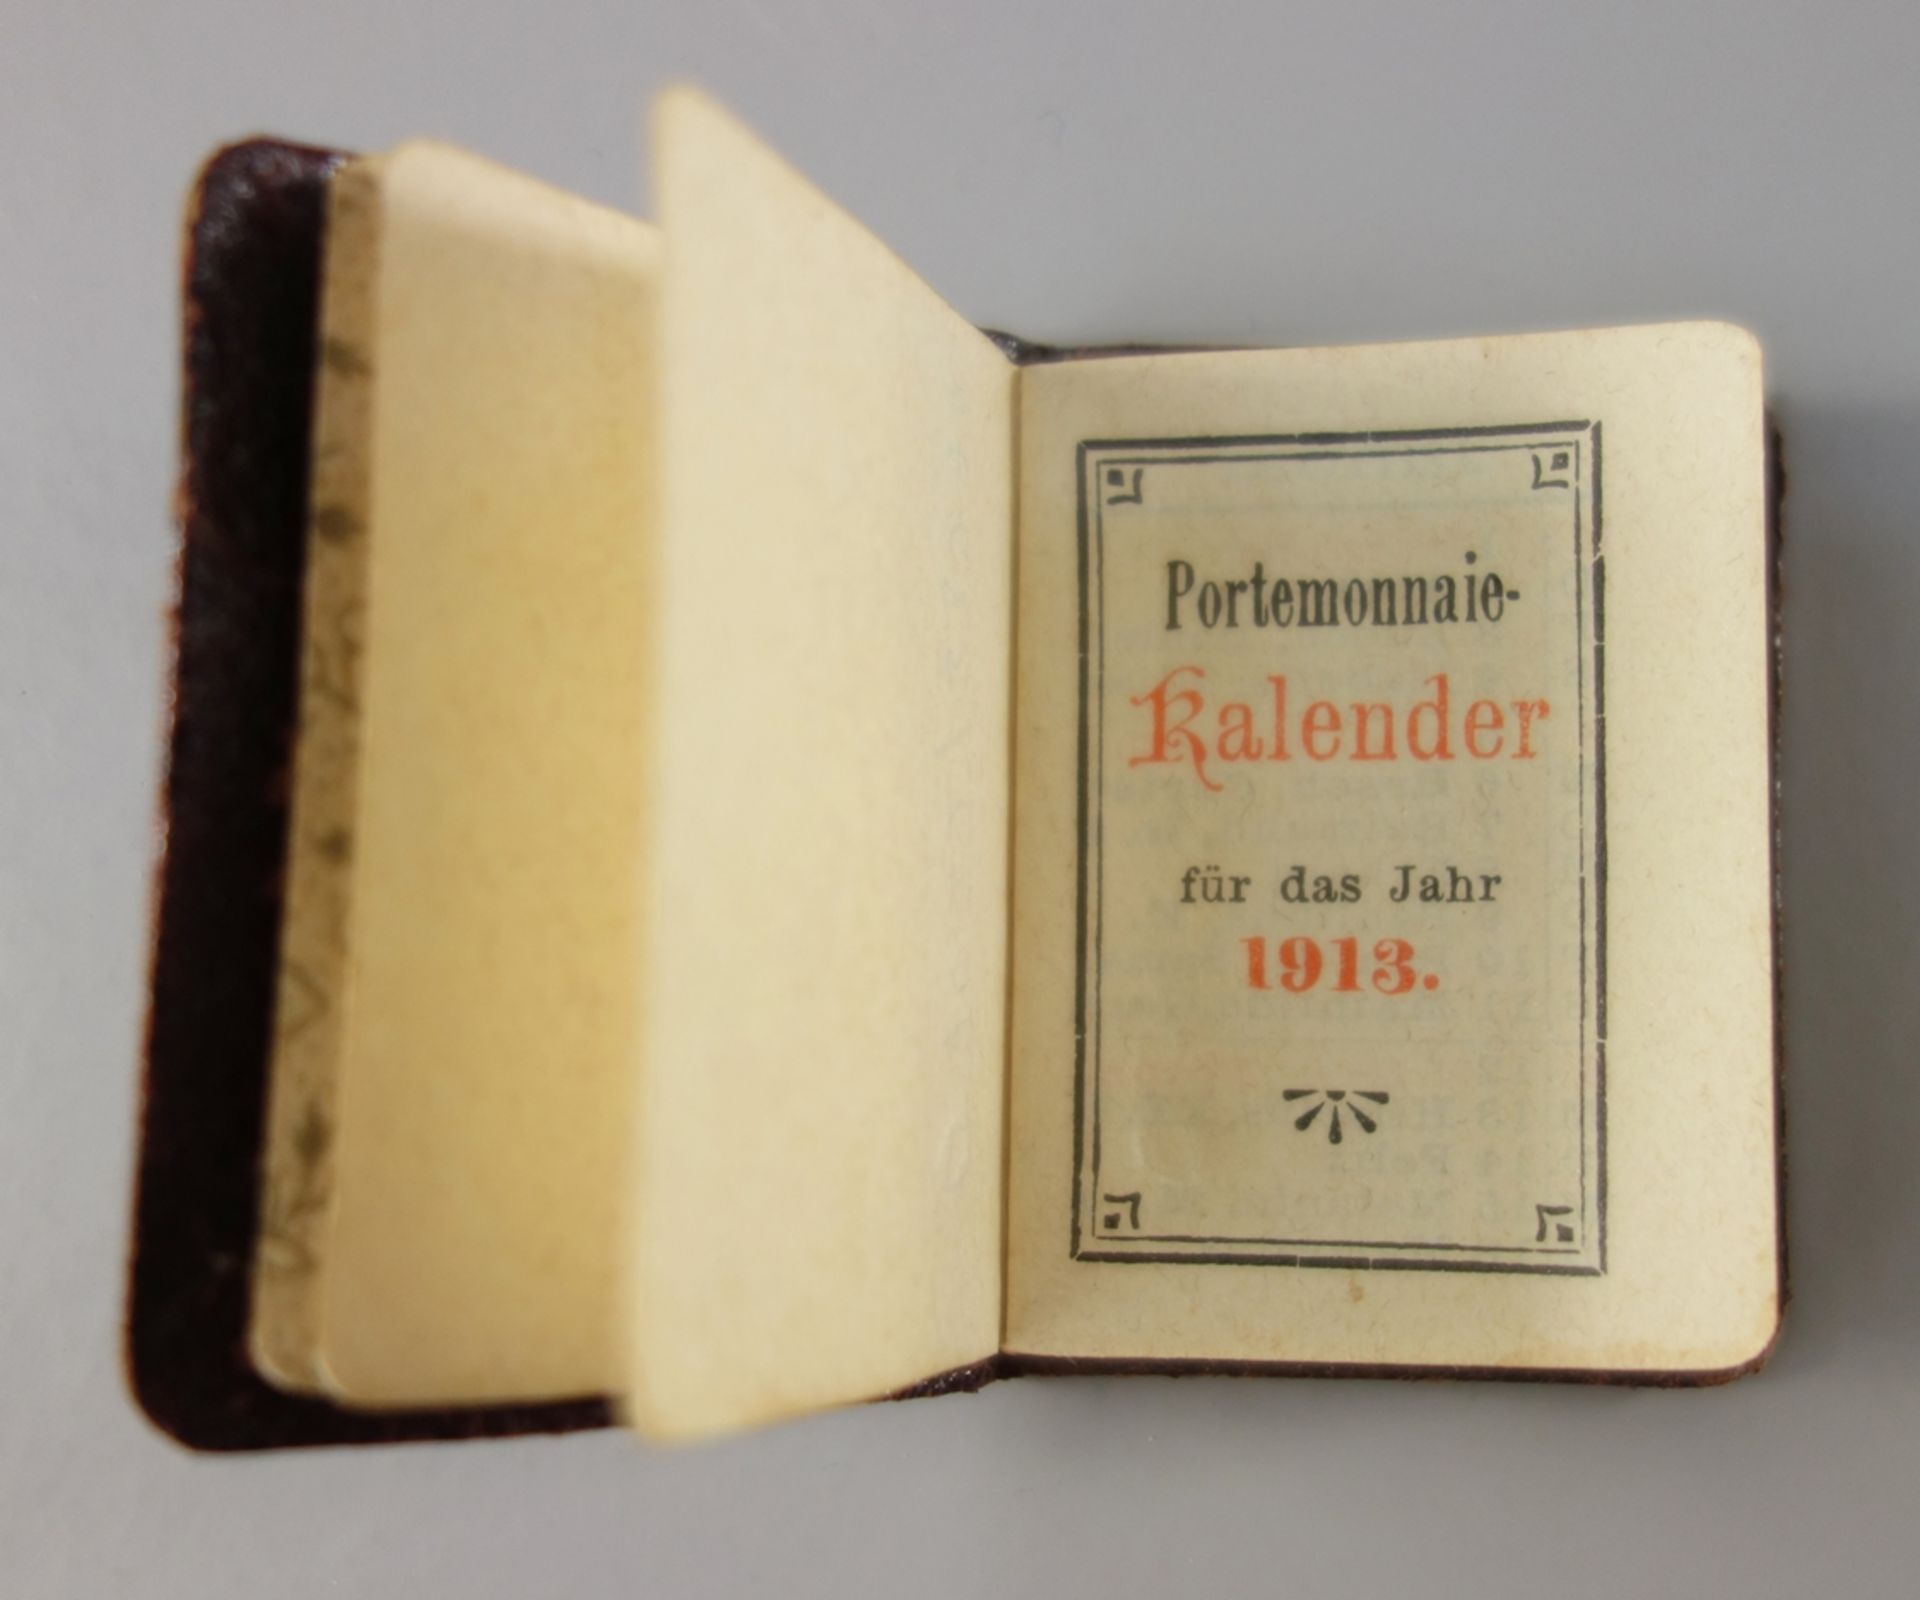 Portemonnaie-Kalender für das Jahr 1913, Carl Klippel, Papierhandlung, Frankfurt a.M., - Bild 3 aus 4